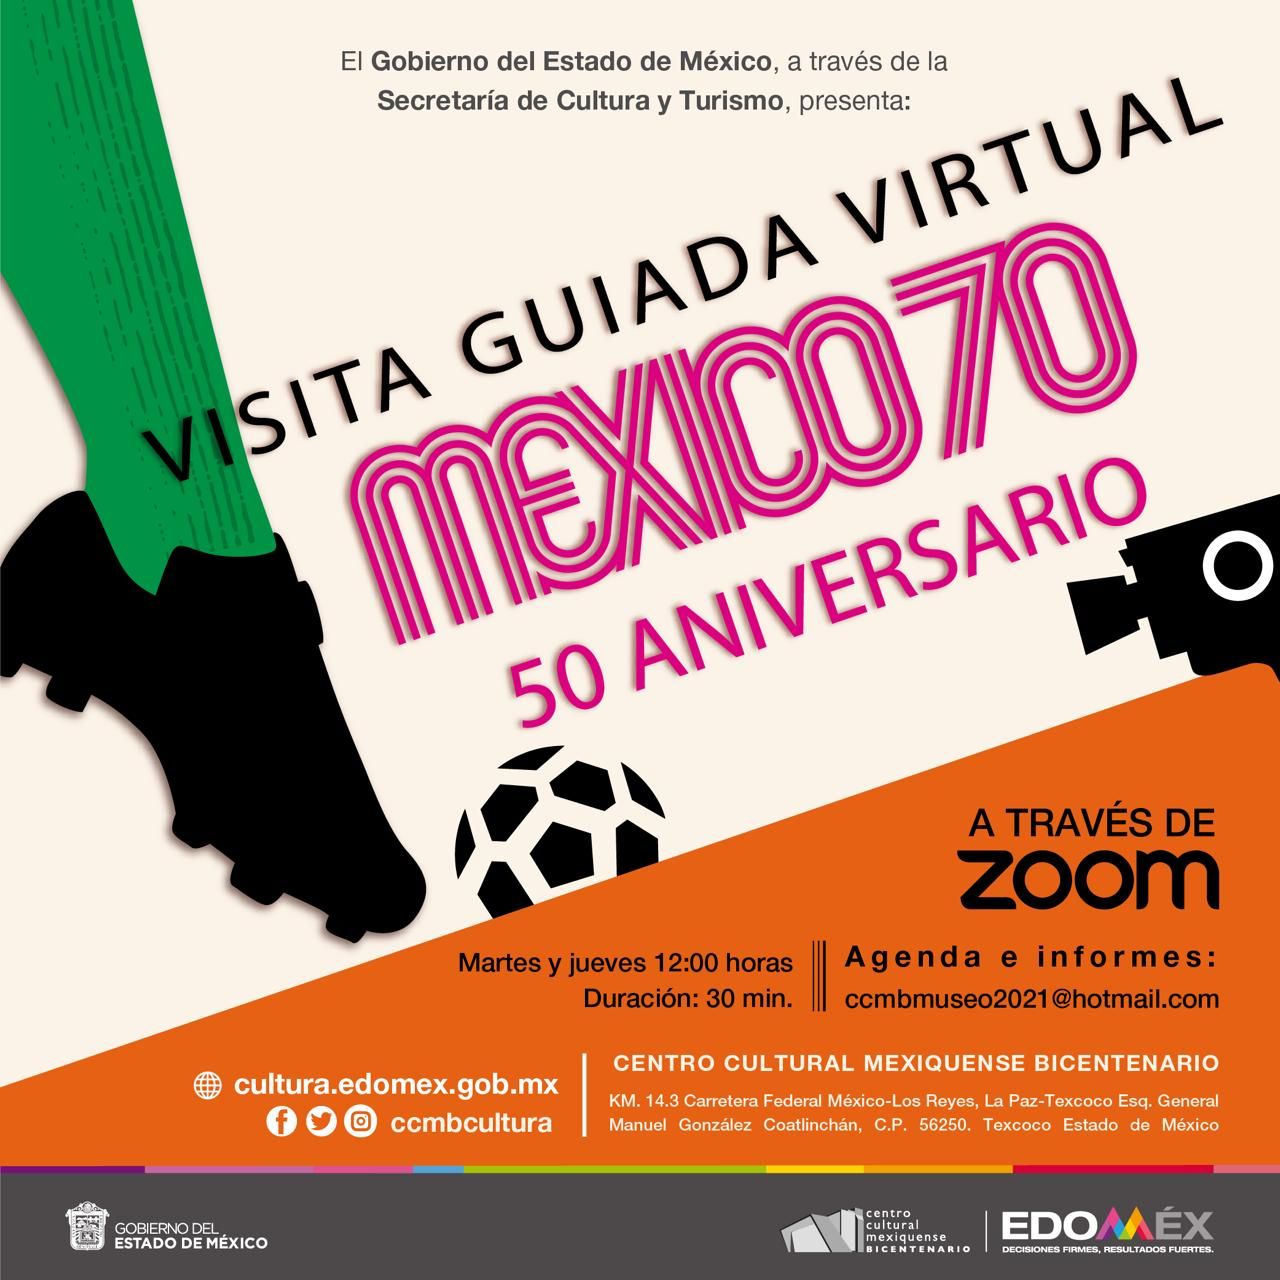 Ofrece centro cultural mexiquense bicentenario visitas guiadas virtuales en su biblioteca y exposición ’Mexico 70’